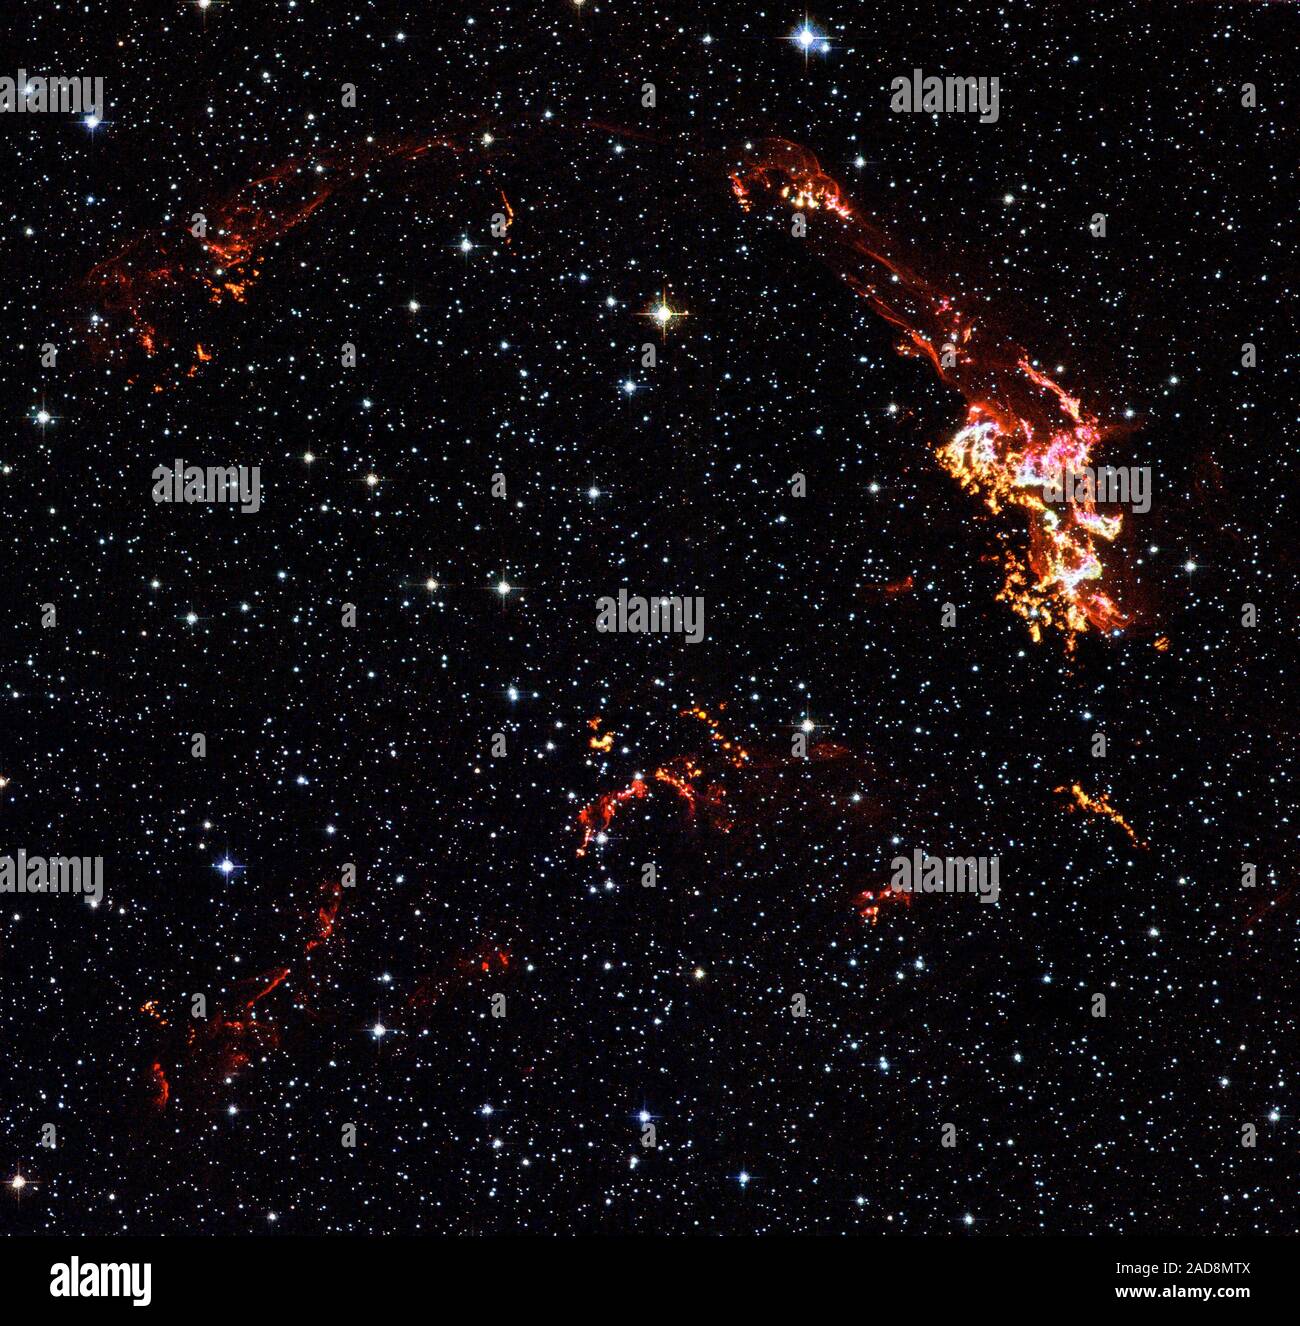 Les Noeuds et rubans filamenteux de gaz incandescent sont visibles dans cette image du télescope spatial Hubble supernova de Kepler. Cette image a été prise avec la caméra avancée de Hubble pour les enquêtes (ACS) en août 2003. Hubble à bord filtres isoler la lumière visible émise par l'hydrogène, l'azote et d'oxygène dans le reste et aussi laisser par starlight de premier plan et arrière-plan d'étoiles. Ces images révèlent où l'onde de choc est supernova claquer dans des régions denses de gaz à proximité. L'incandescent lumineux noeuds sont en bouquets denses qui forment derrière le déménagement vers l'onde de choc. Comme le choc des charrues Banque D'Images